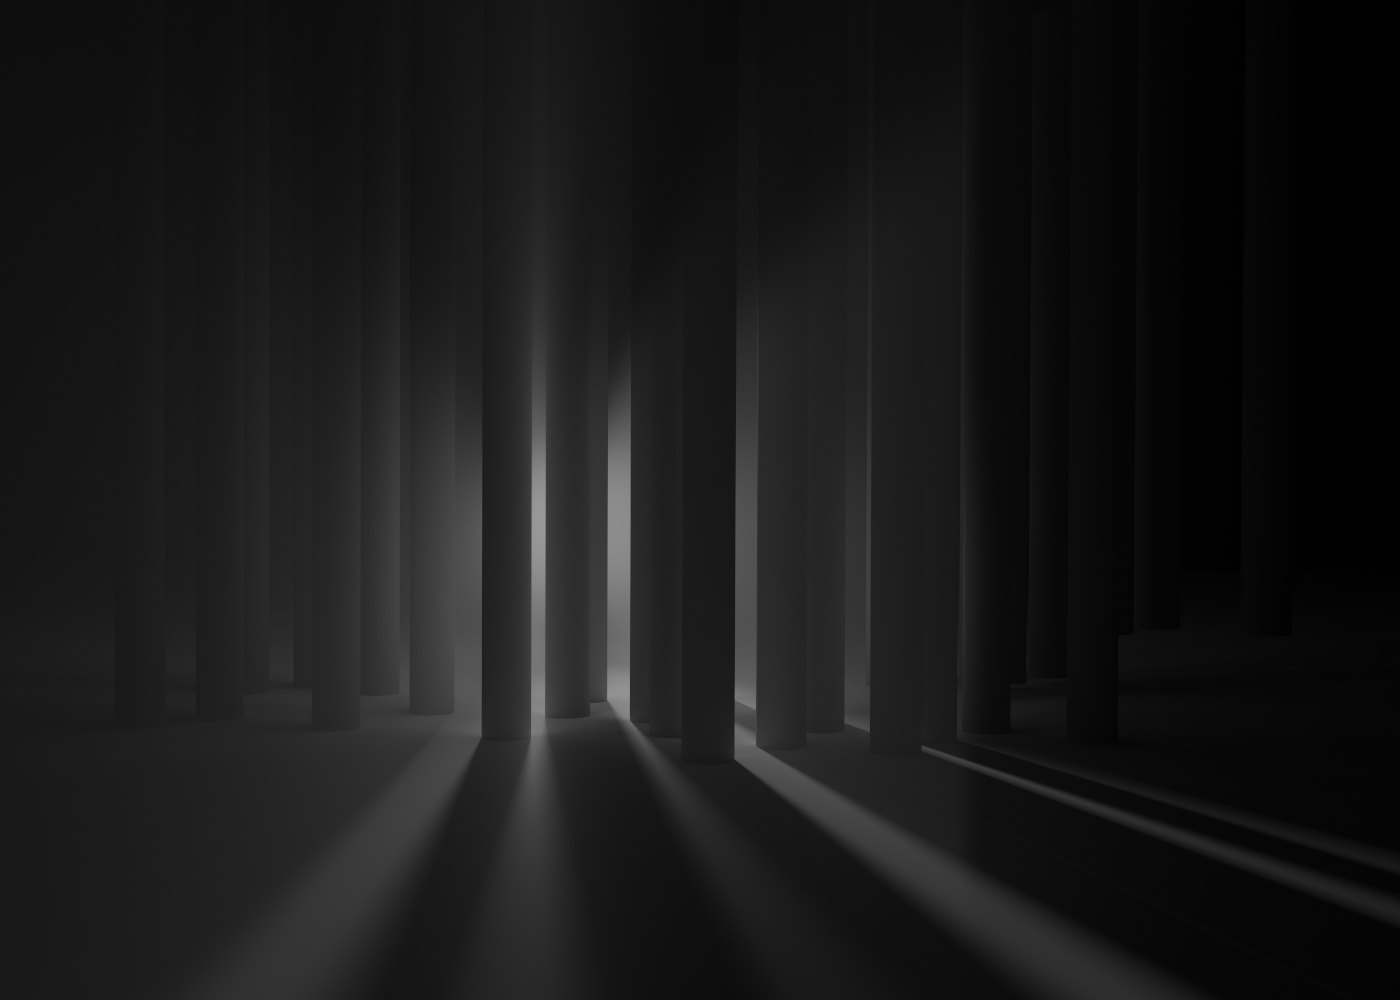 Virtuelle abstrakte Szenerie, Abstrakte digitale Kunst, Raytracing, Computer-gerendertes Bild, 2018. Viele zylindrische Säulen stehen in der Dunkelheit vor dem Betrachter und versperren die Sicht auf eine nahe Person, die mit einem starken Scheinwerfer auf den Betrachter zukommt.